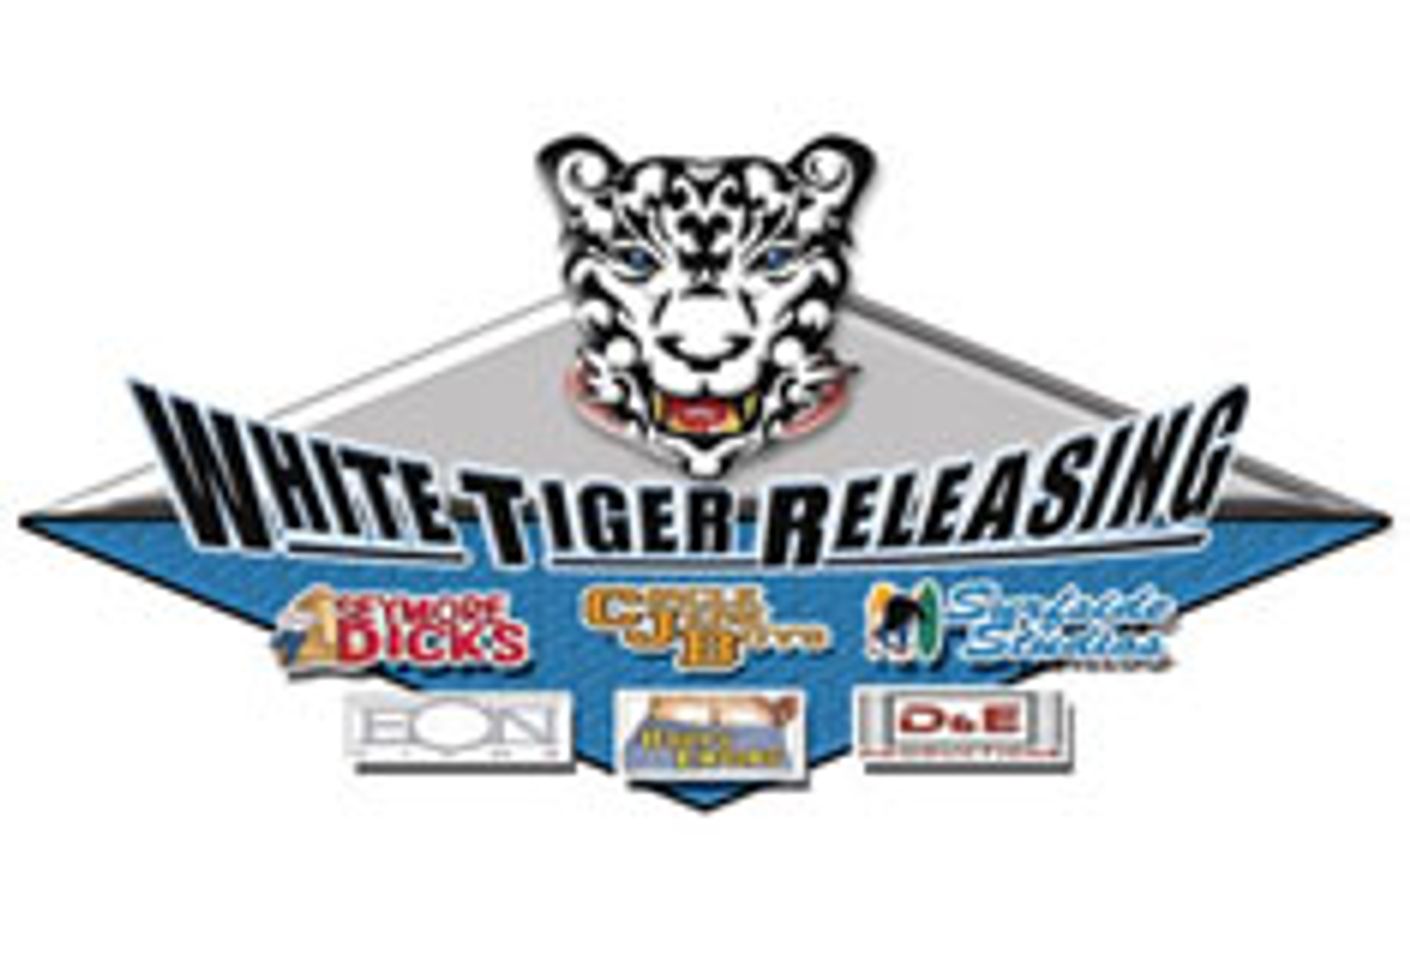 White Tiger Names Kurt Harold to Sales Dept.